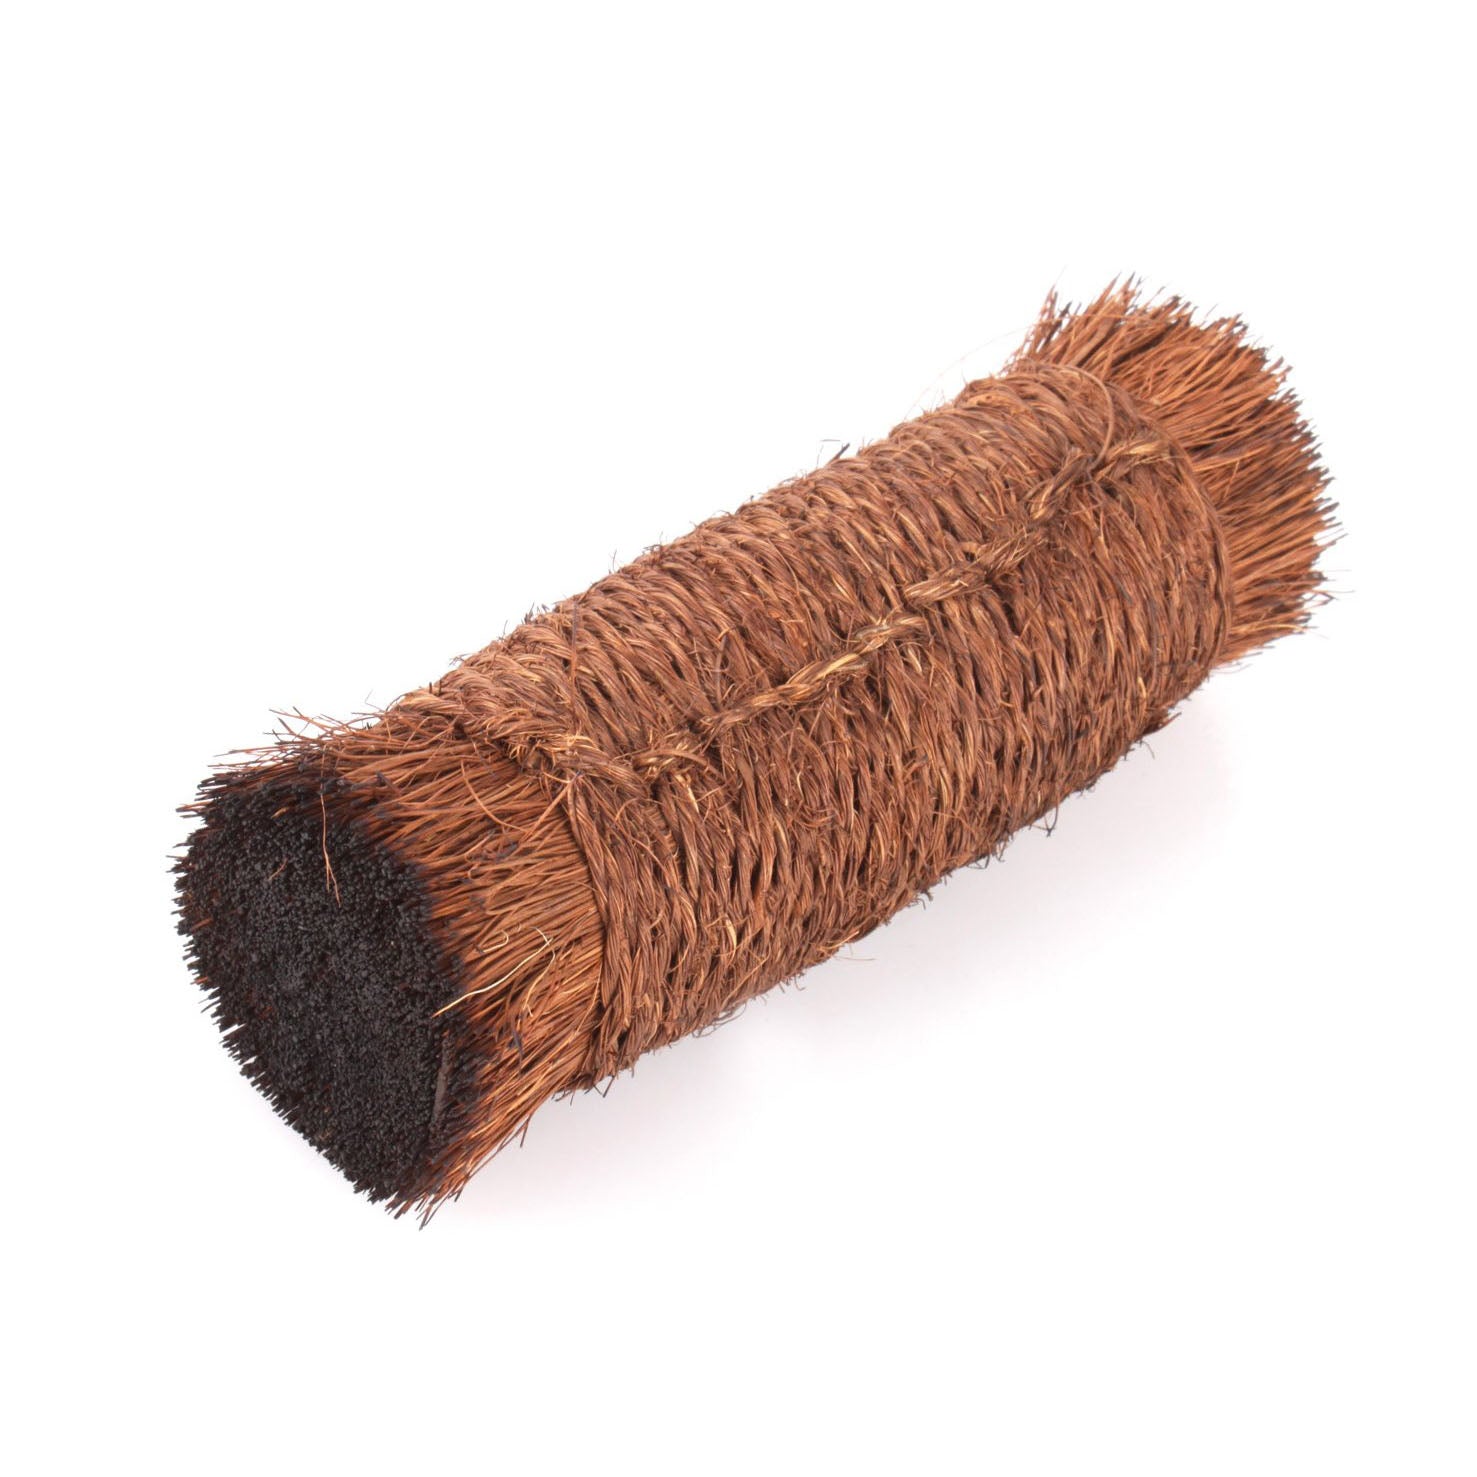 Palm fiber crumb-brush Turkey wing